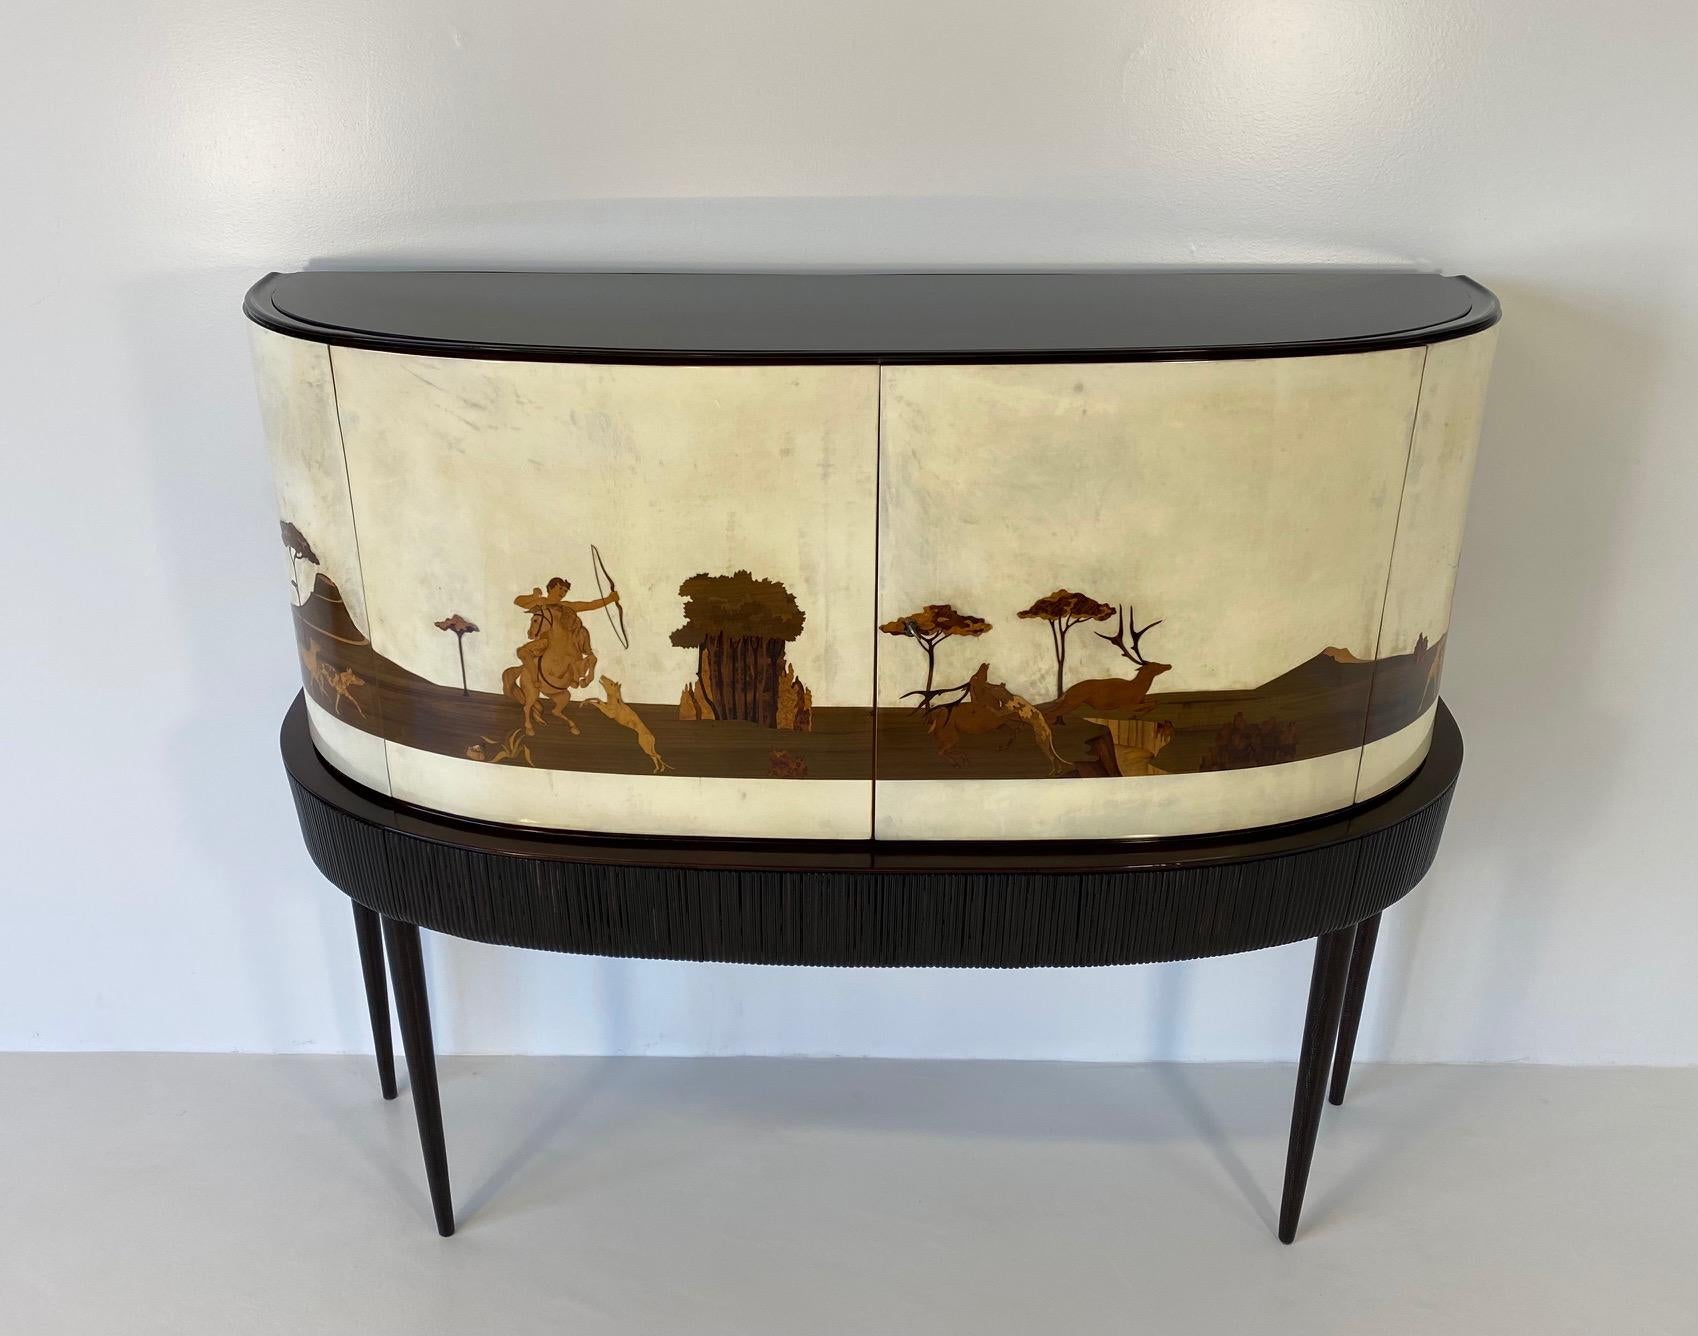 Ce meuble de bar a été fabriqué en Italie à la fin des années 1930. Il s'agit d'une pièce unique et spéciale.
Sa formidable valeur historique et artistique fait de cet objet une véritable pièce d'art, difficile à trouver et unique en son genre.